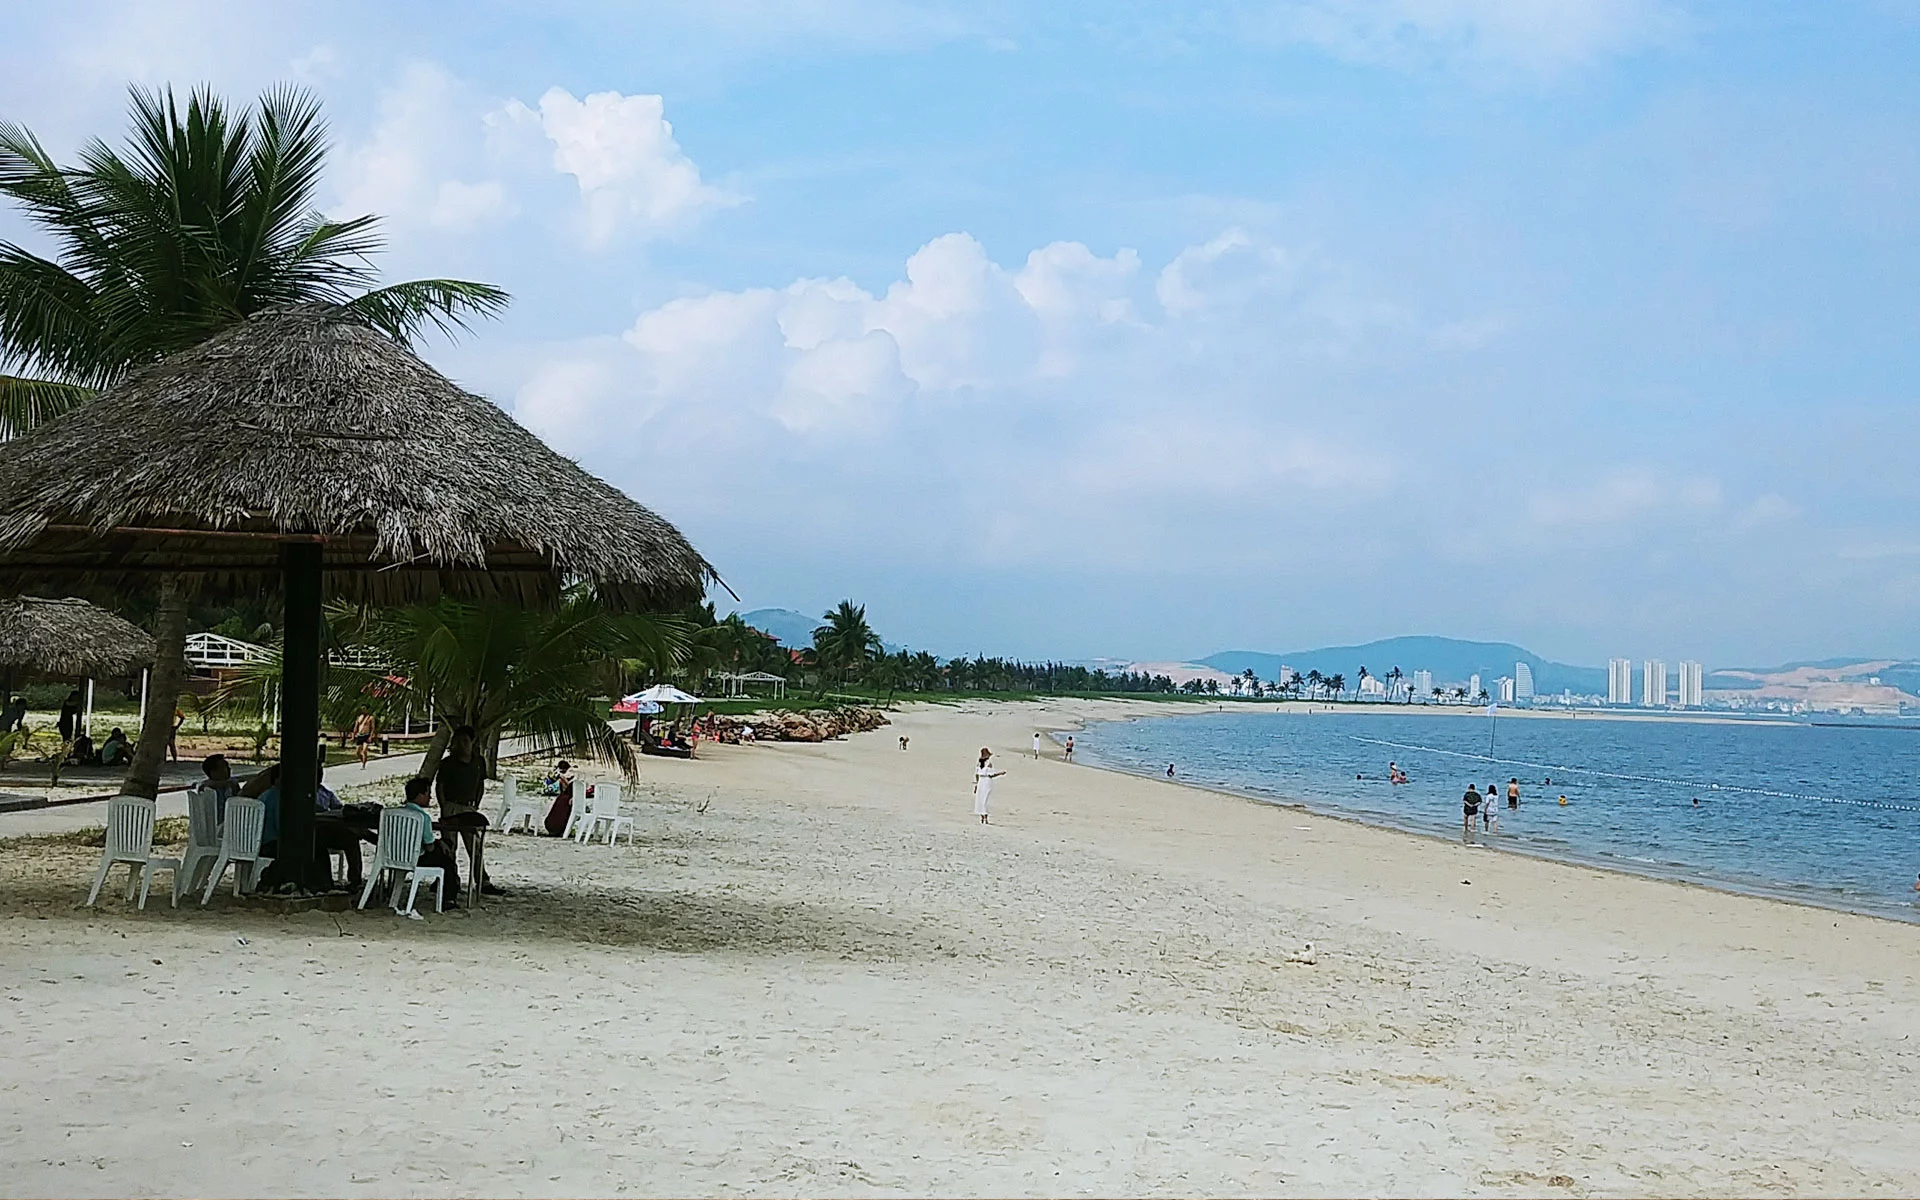 Tuan Chau Beach - Most Popular Beaches In Halong Bay